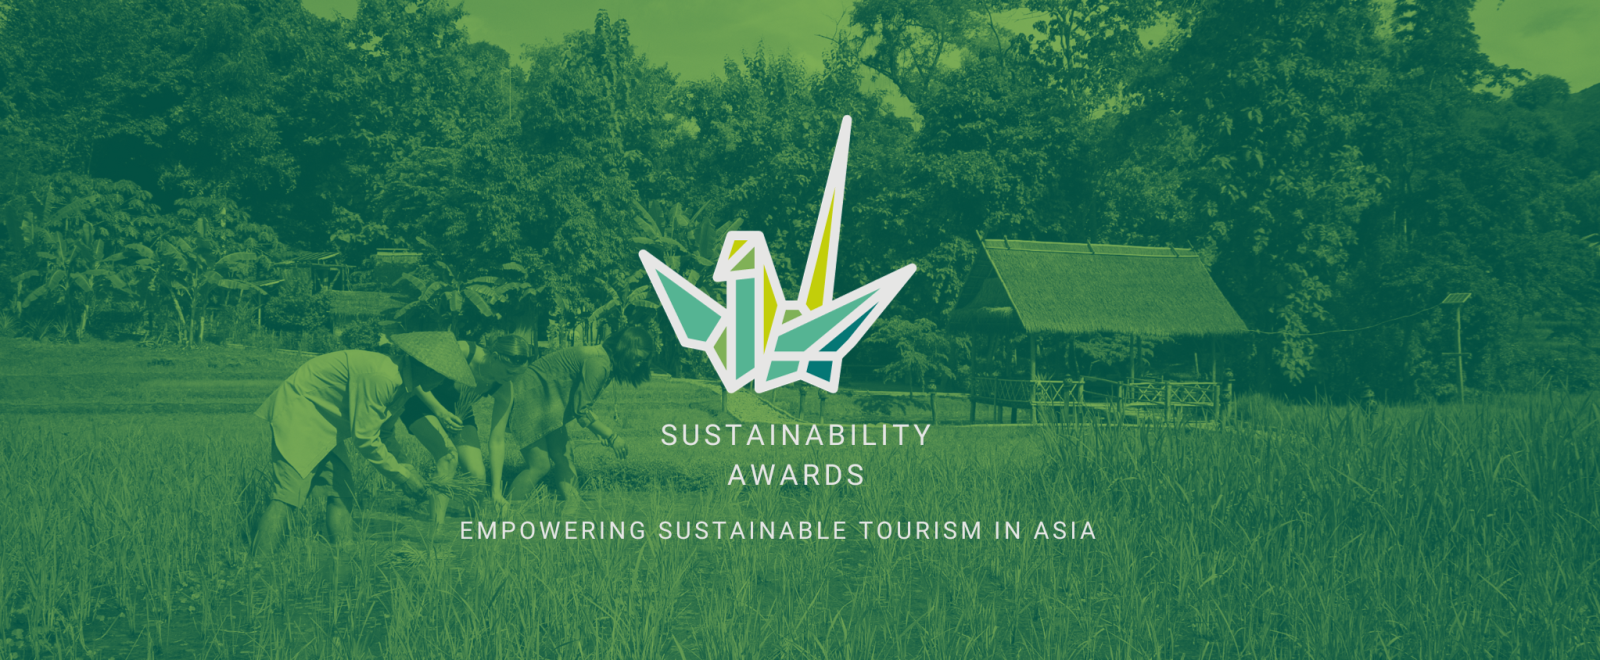 sustainability awards blog